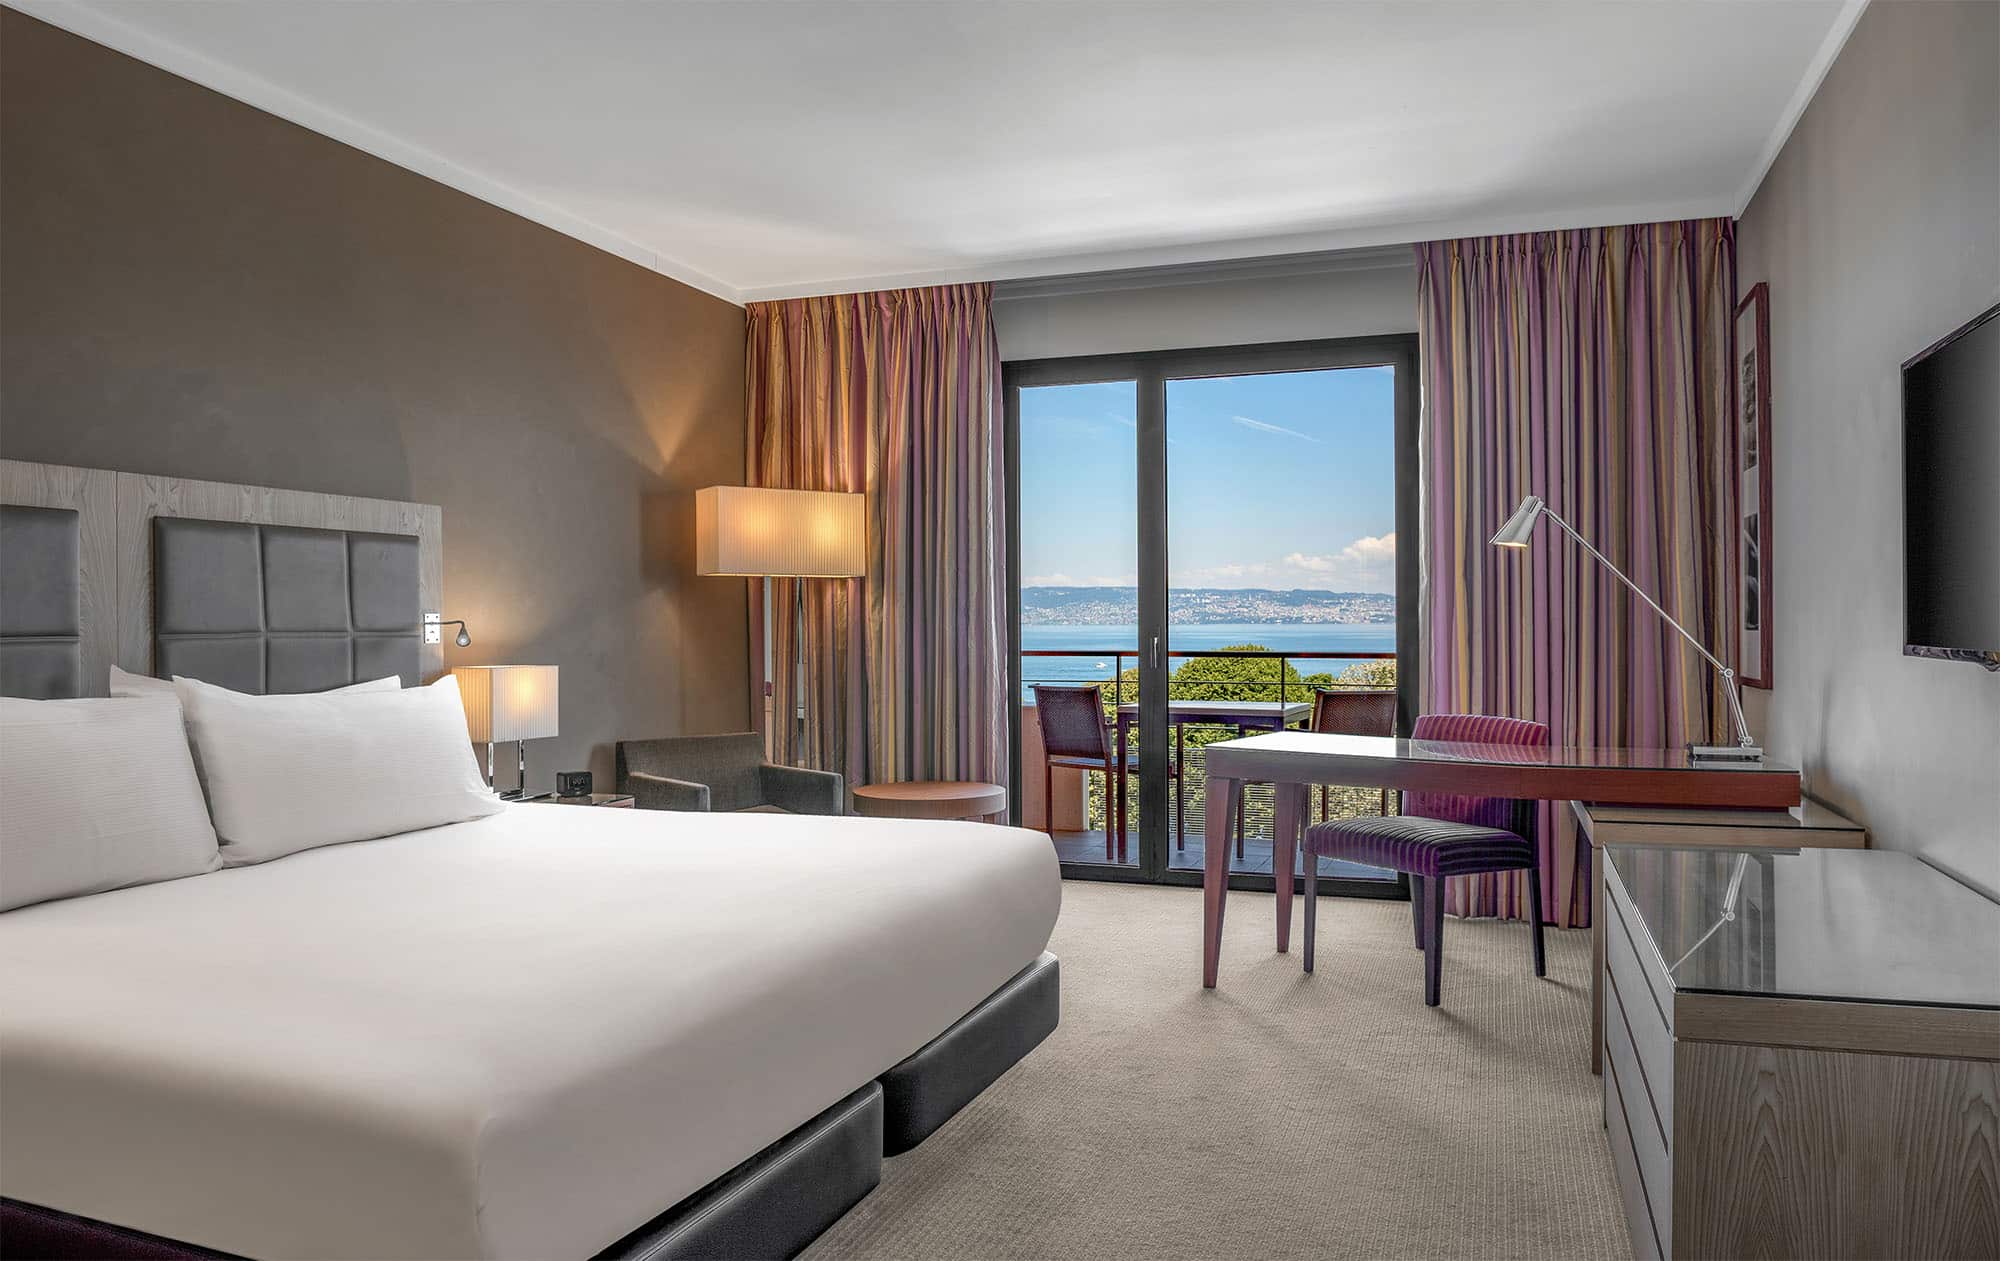 Les chambres de l'hôtel Hilton à Évian-les-Bains propose sont équipées et décorées avec goût ! Certaines d'entre elles ont une vue à couper le souffle sur le lac Léman ! De quoi profiter de votre événement d'entreprise dans les meilleures conditions